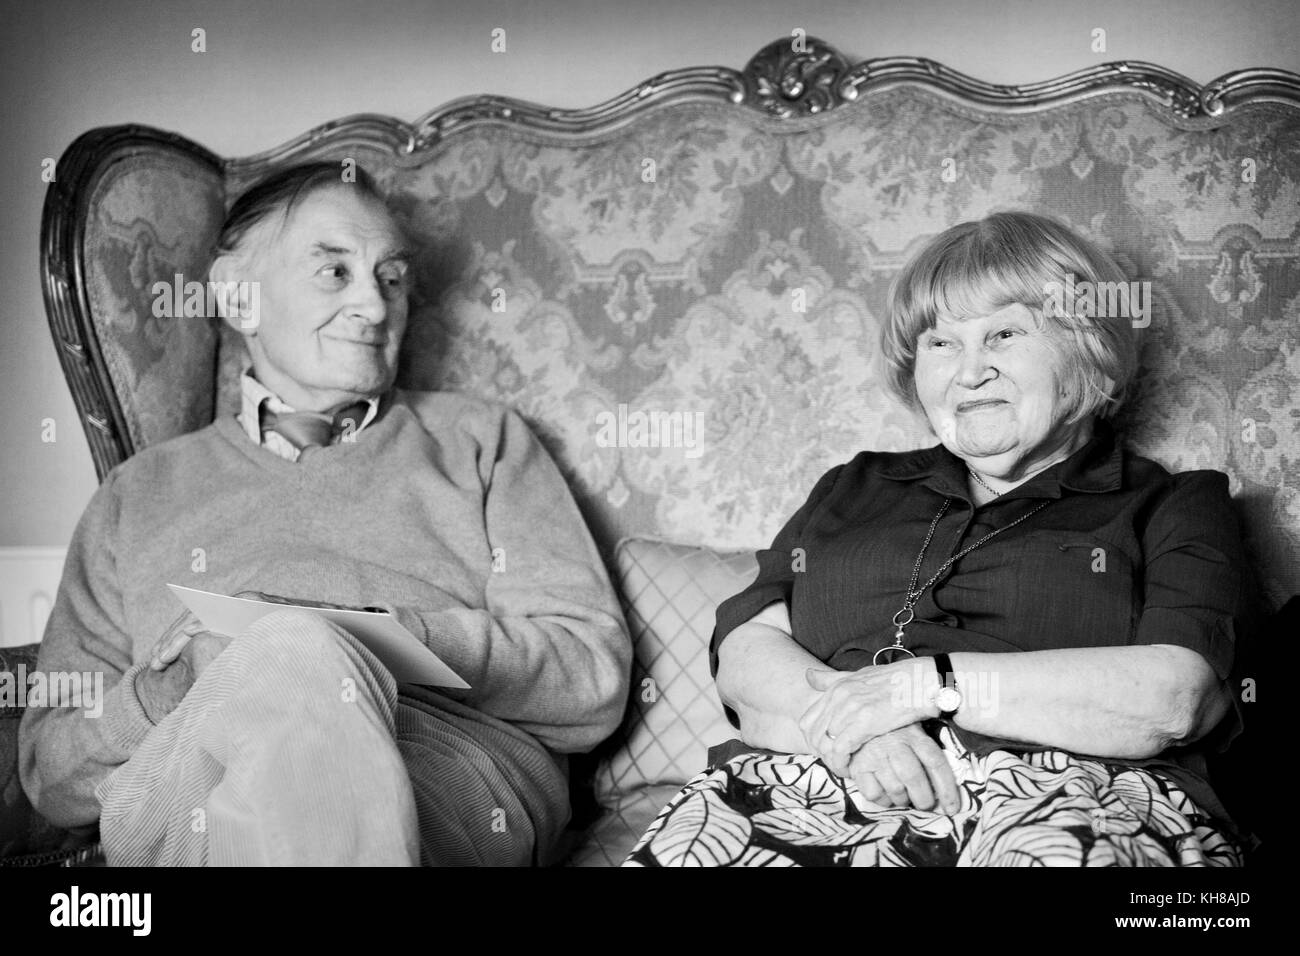 Photographe Jane Bown (13 mars 1925 - 21 décembre 2014) et dessinateur/ Illustrateur Haro Hodson, B&W woman sitting on sofa Banque D'Images